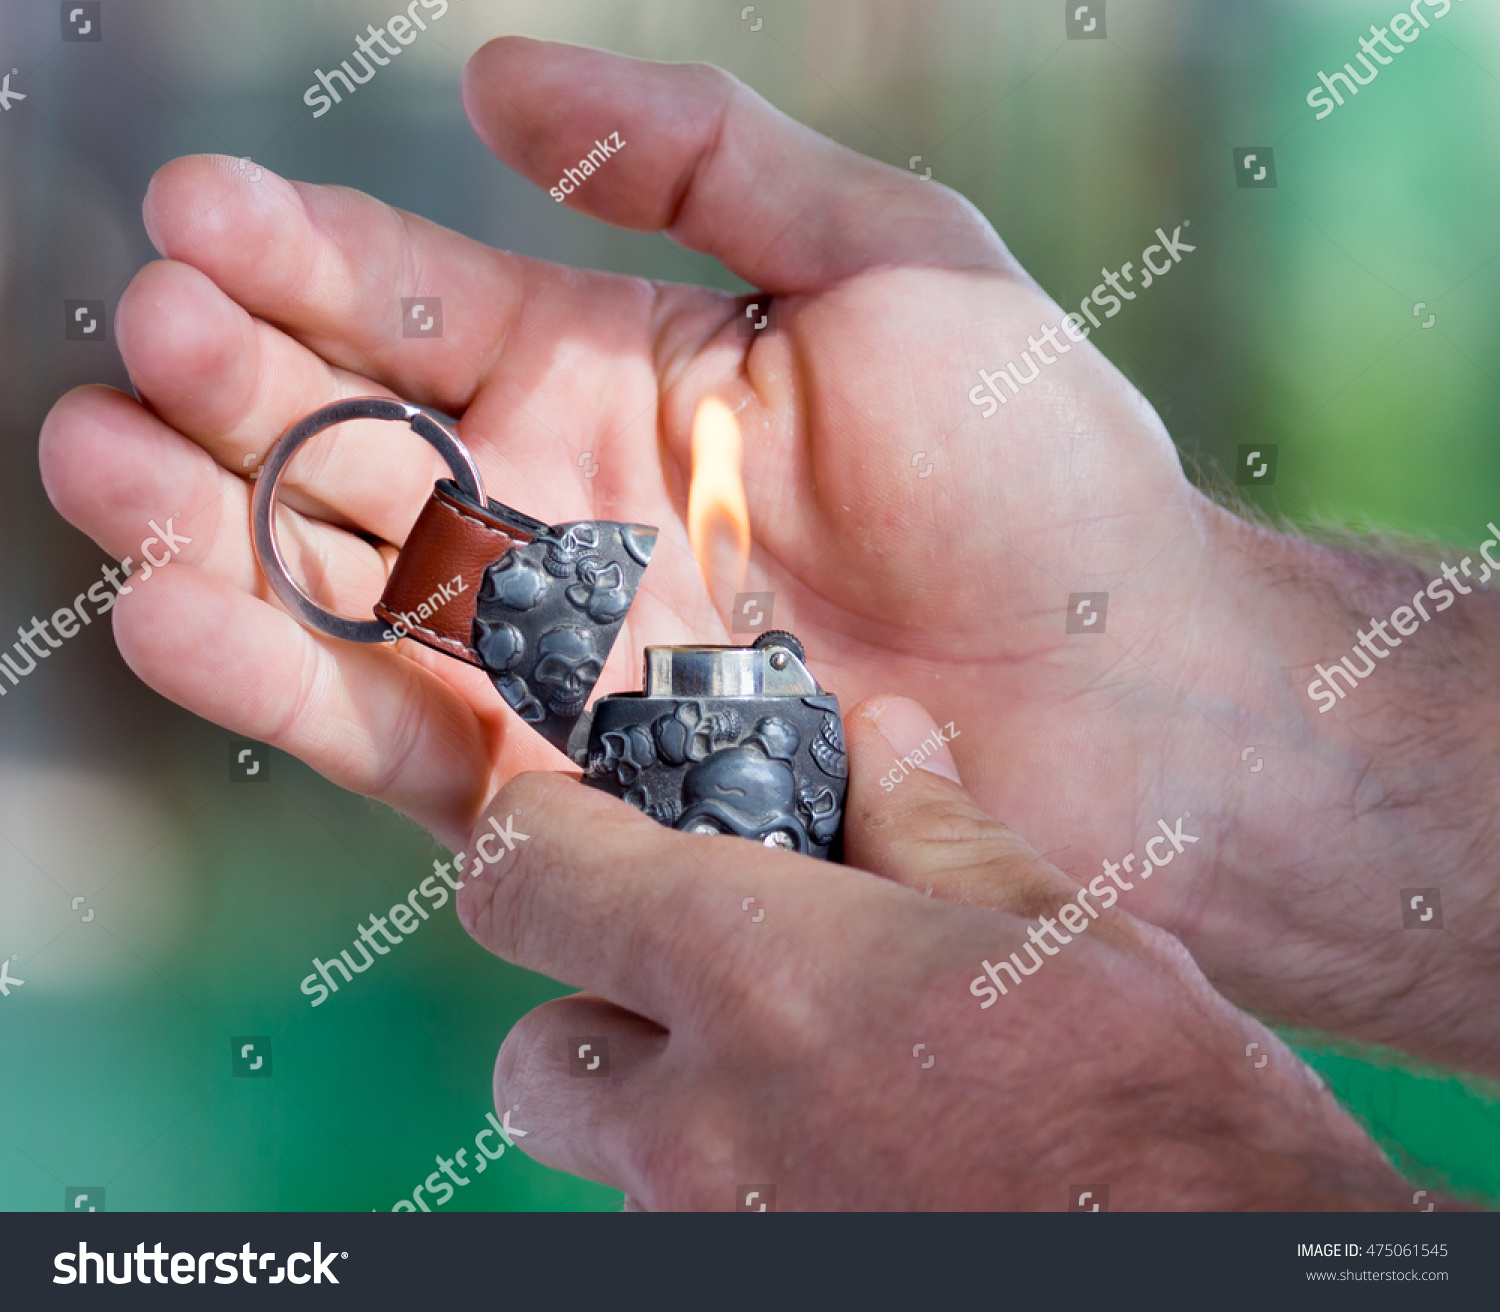 cigarette lighter burn